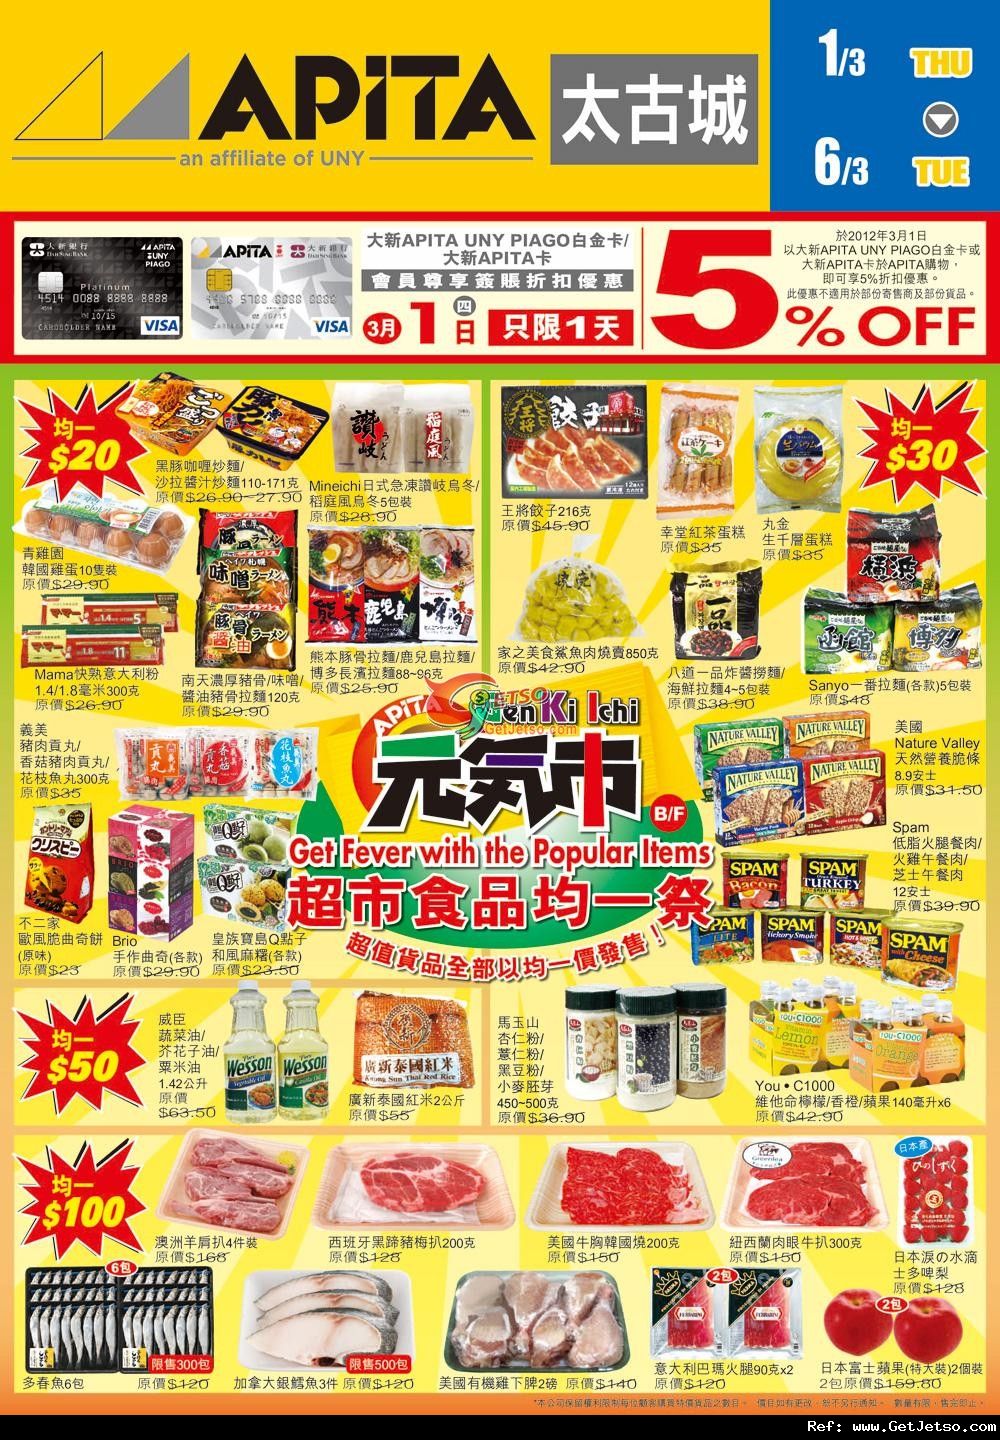 APITA太古城超市食品及家品均一祭購物優惠(至12年3月6日)圖片1